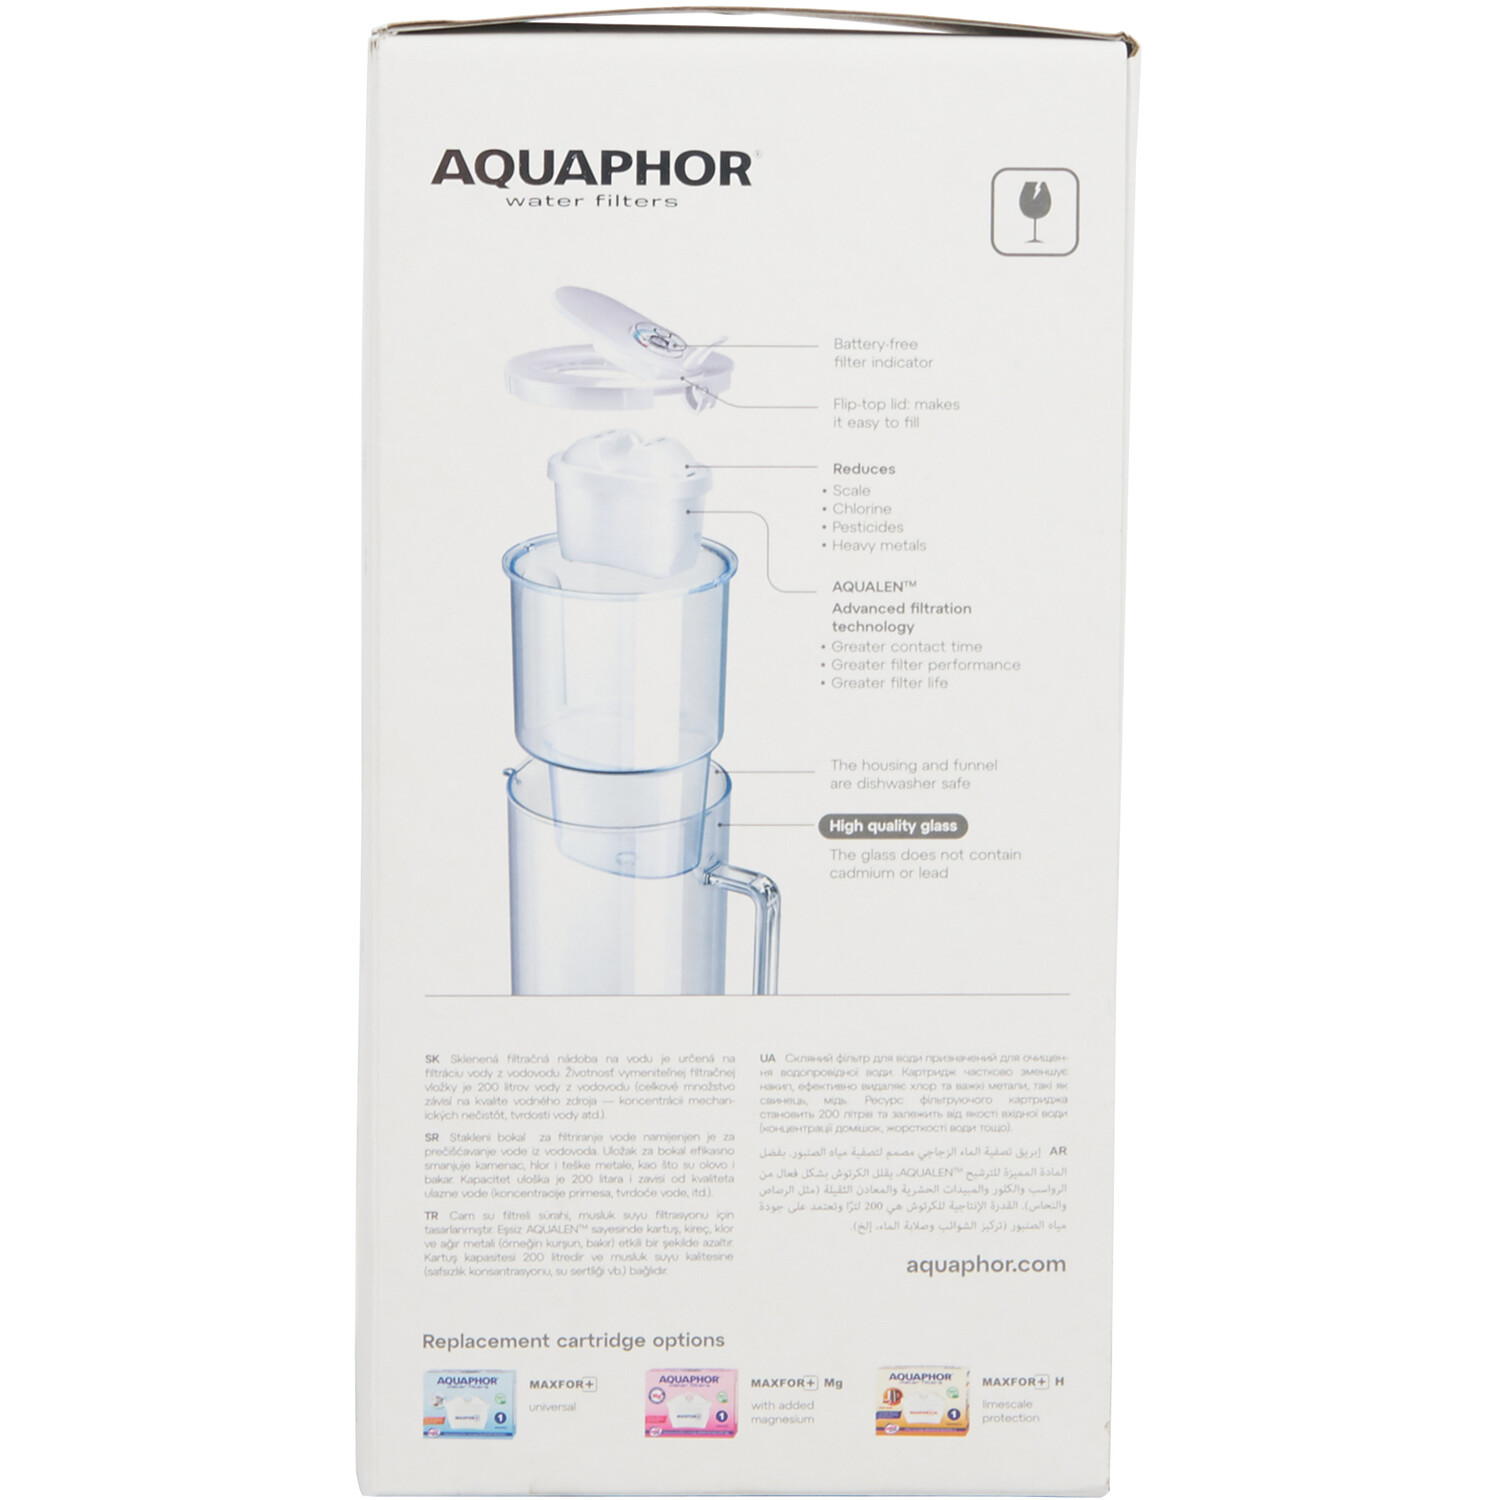 Aquaphor Glass 2.5l Water Filter Jug - White Image 3